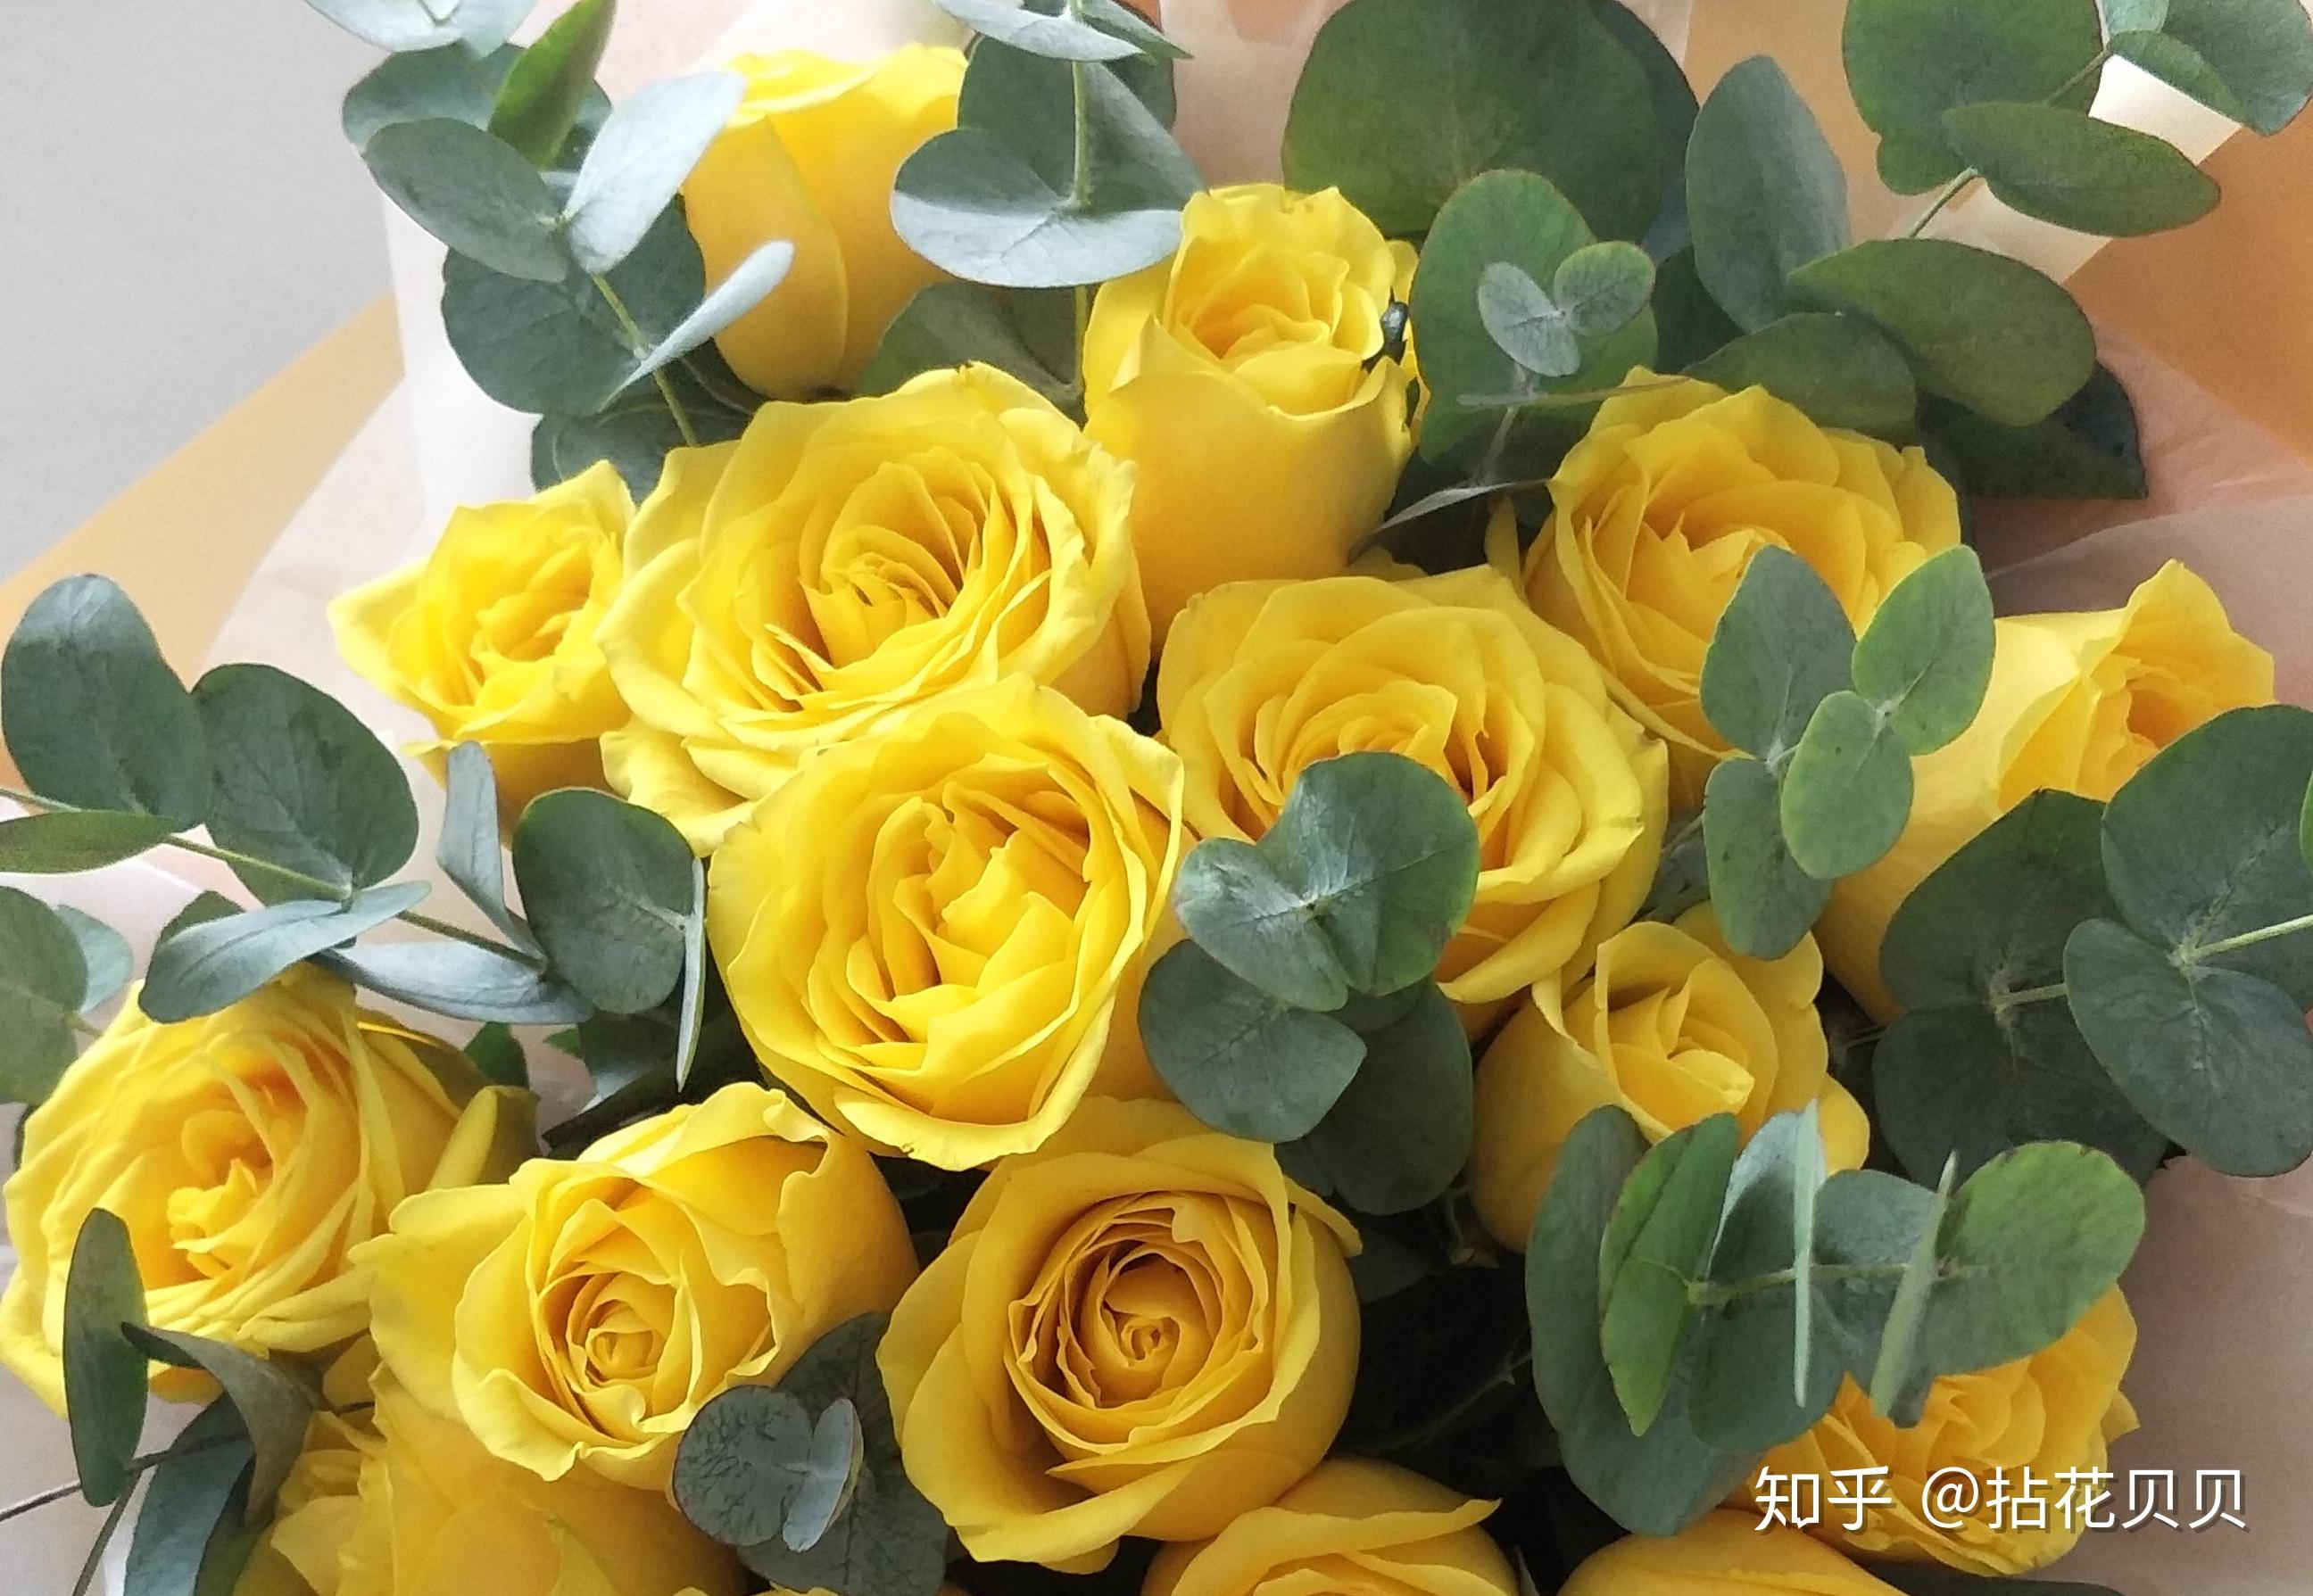 认识花材这8款黄玫瑰品种你都见过吗